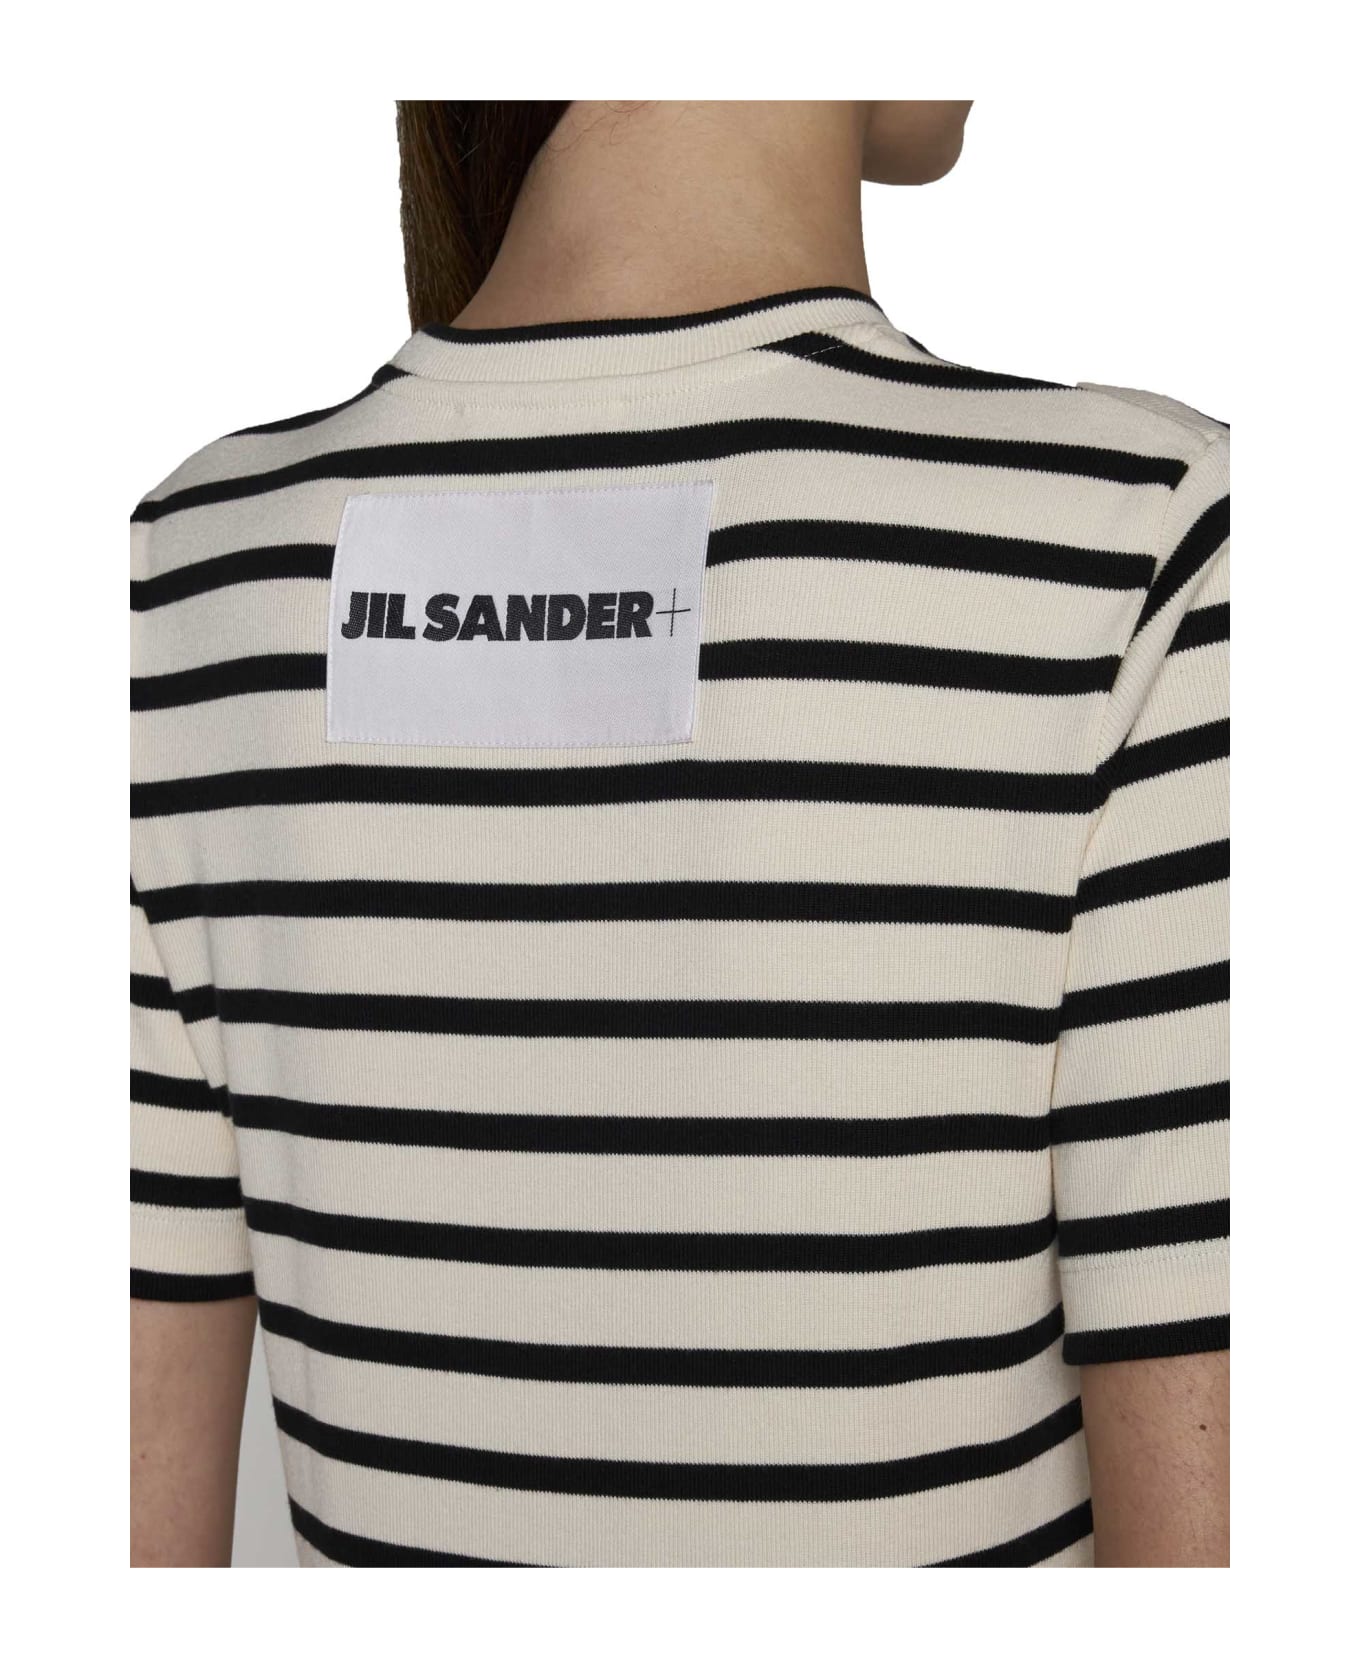 Jil Sander T-Shirt - Bluejay Tシャツ